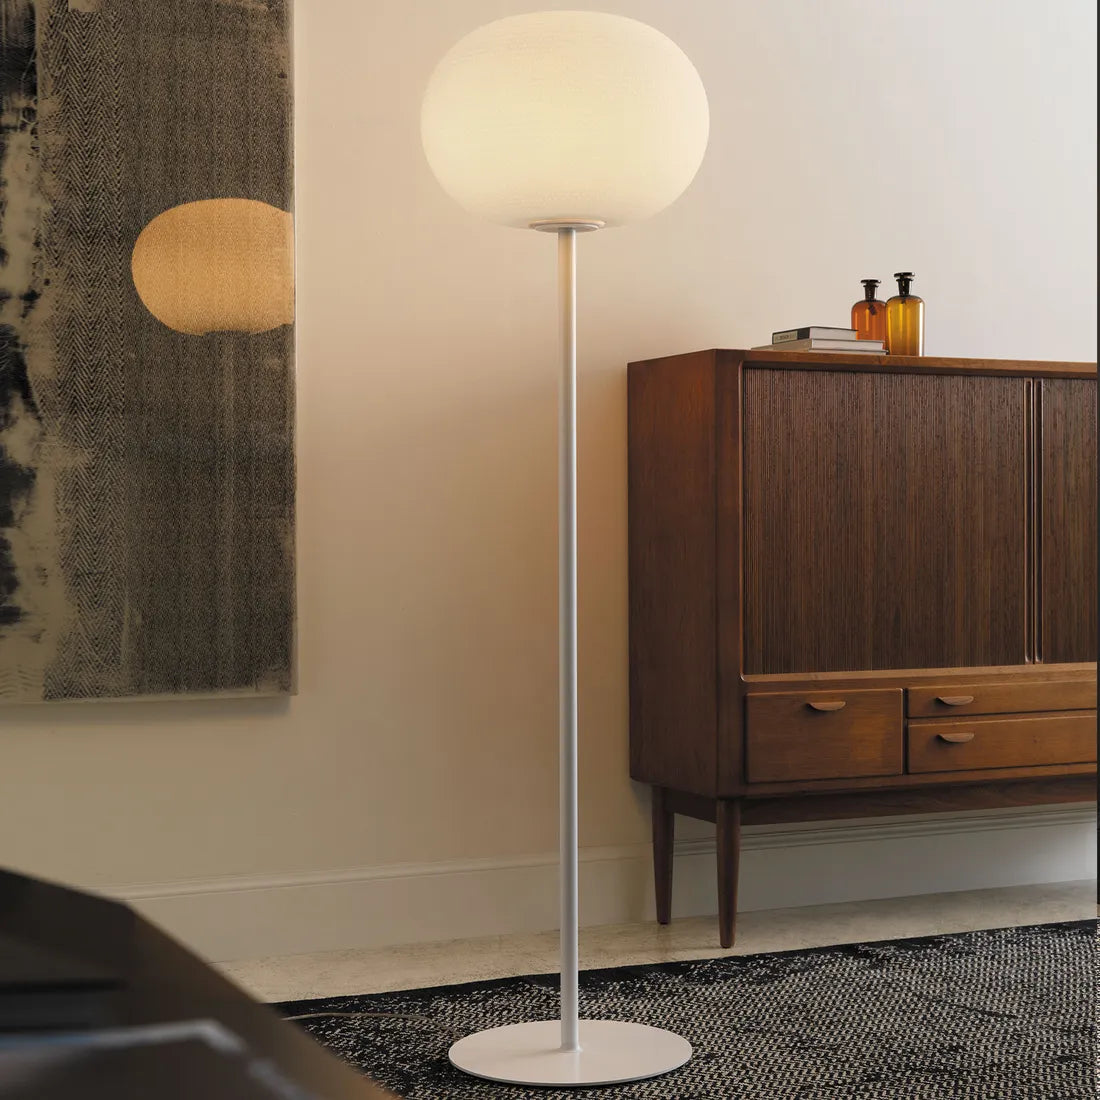 Glass designer floor lamps online, best lighting for living room floor lamps, White floor lamps Italian Brand